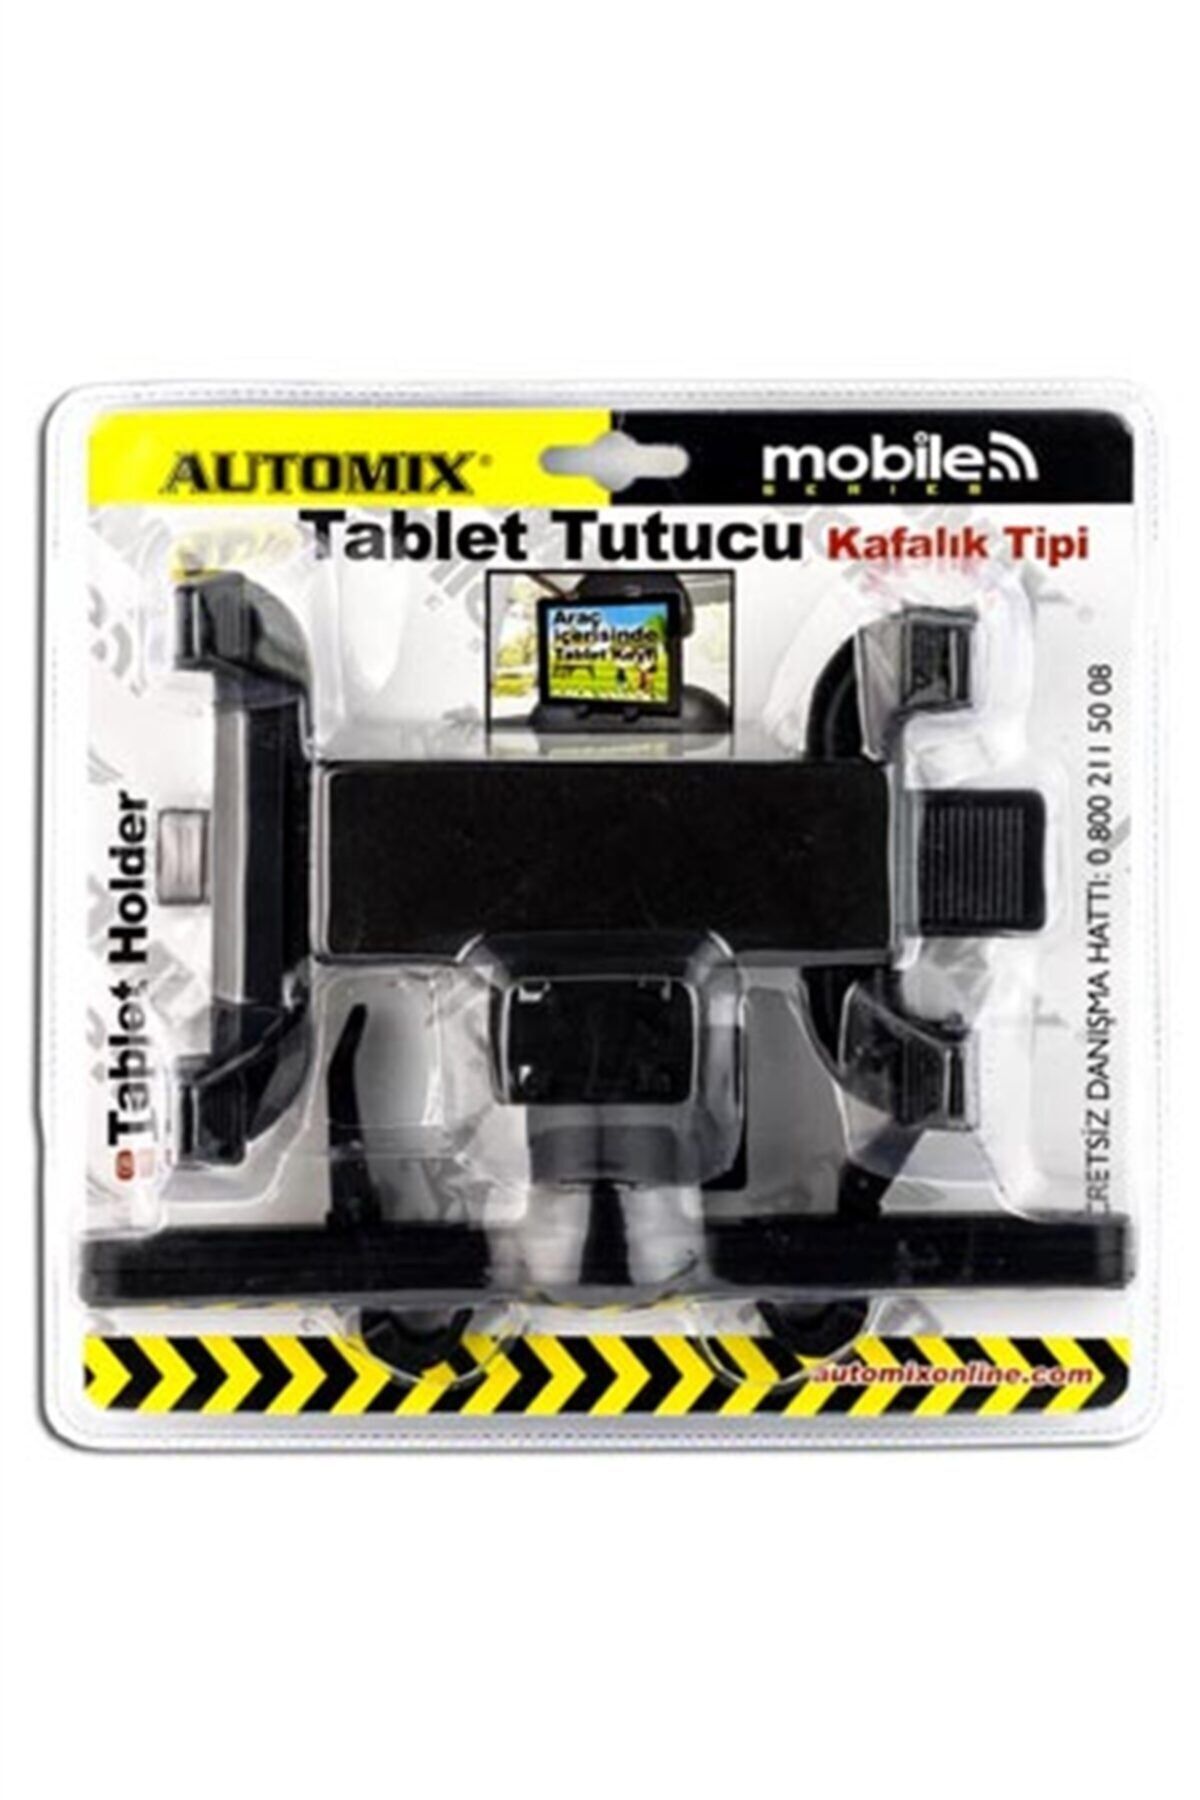 Automix Automıx Tablet Tutucu Kafalık Tipi